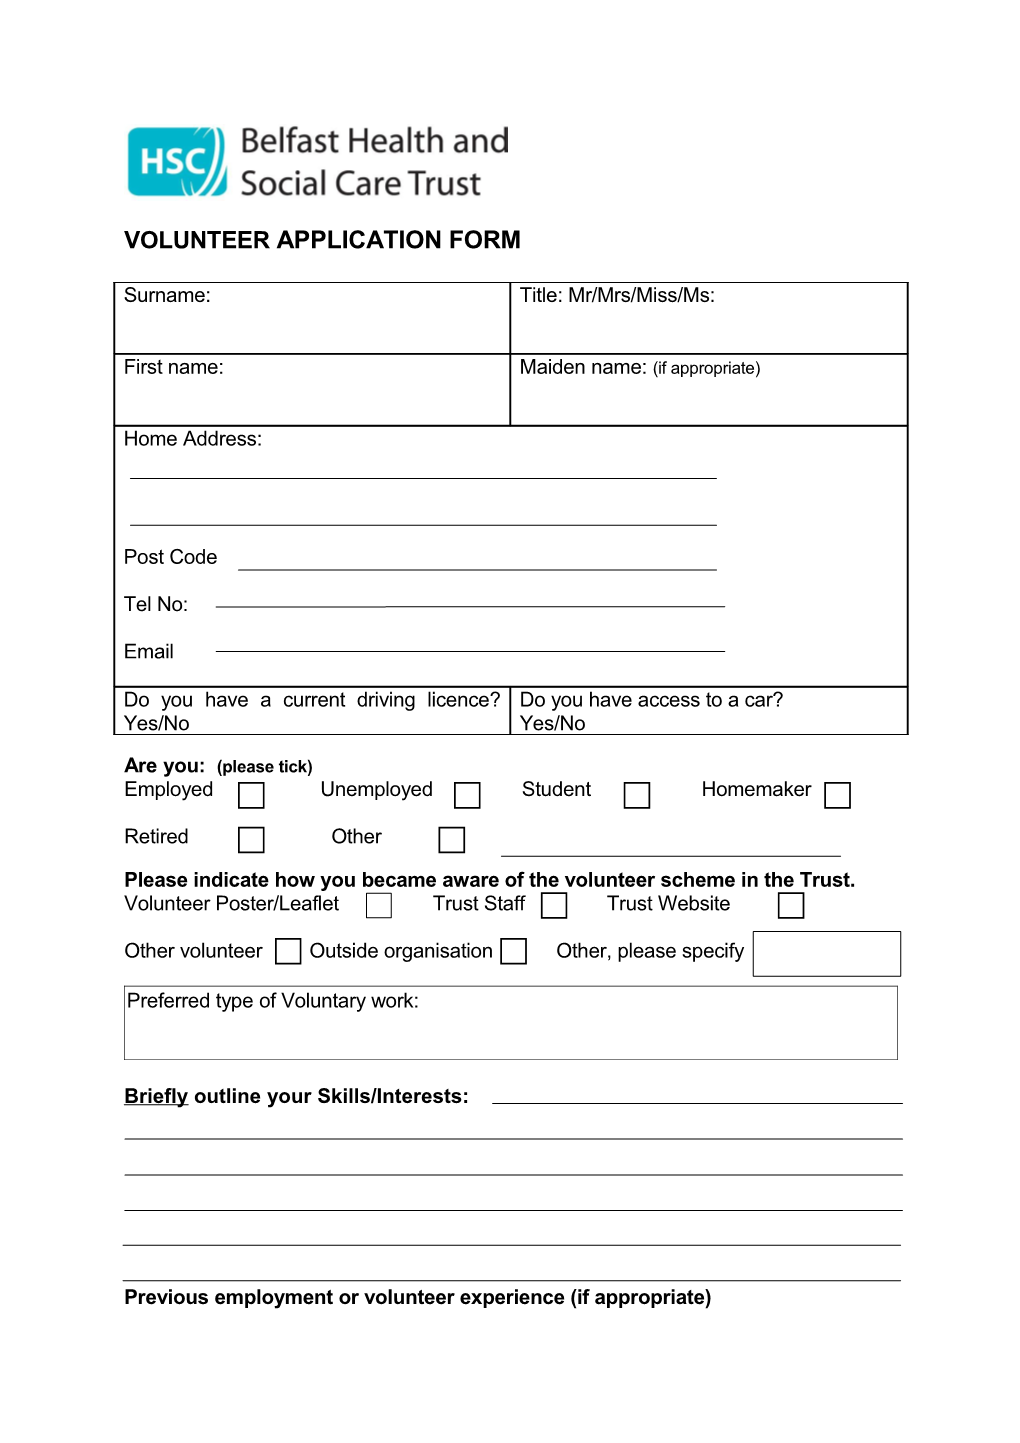 Volunteer Application Form for Belfast Trust -Generic(2)